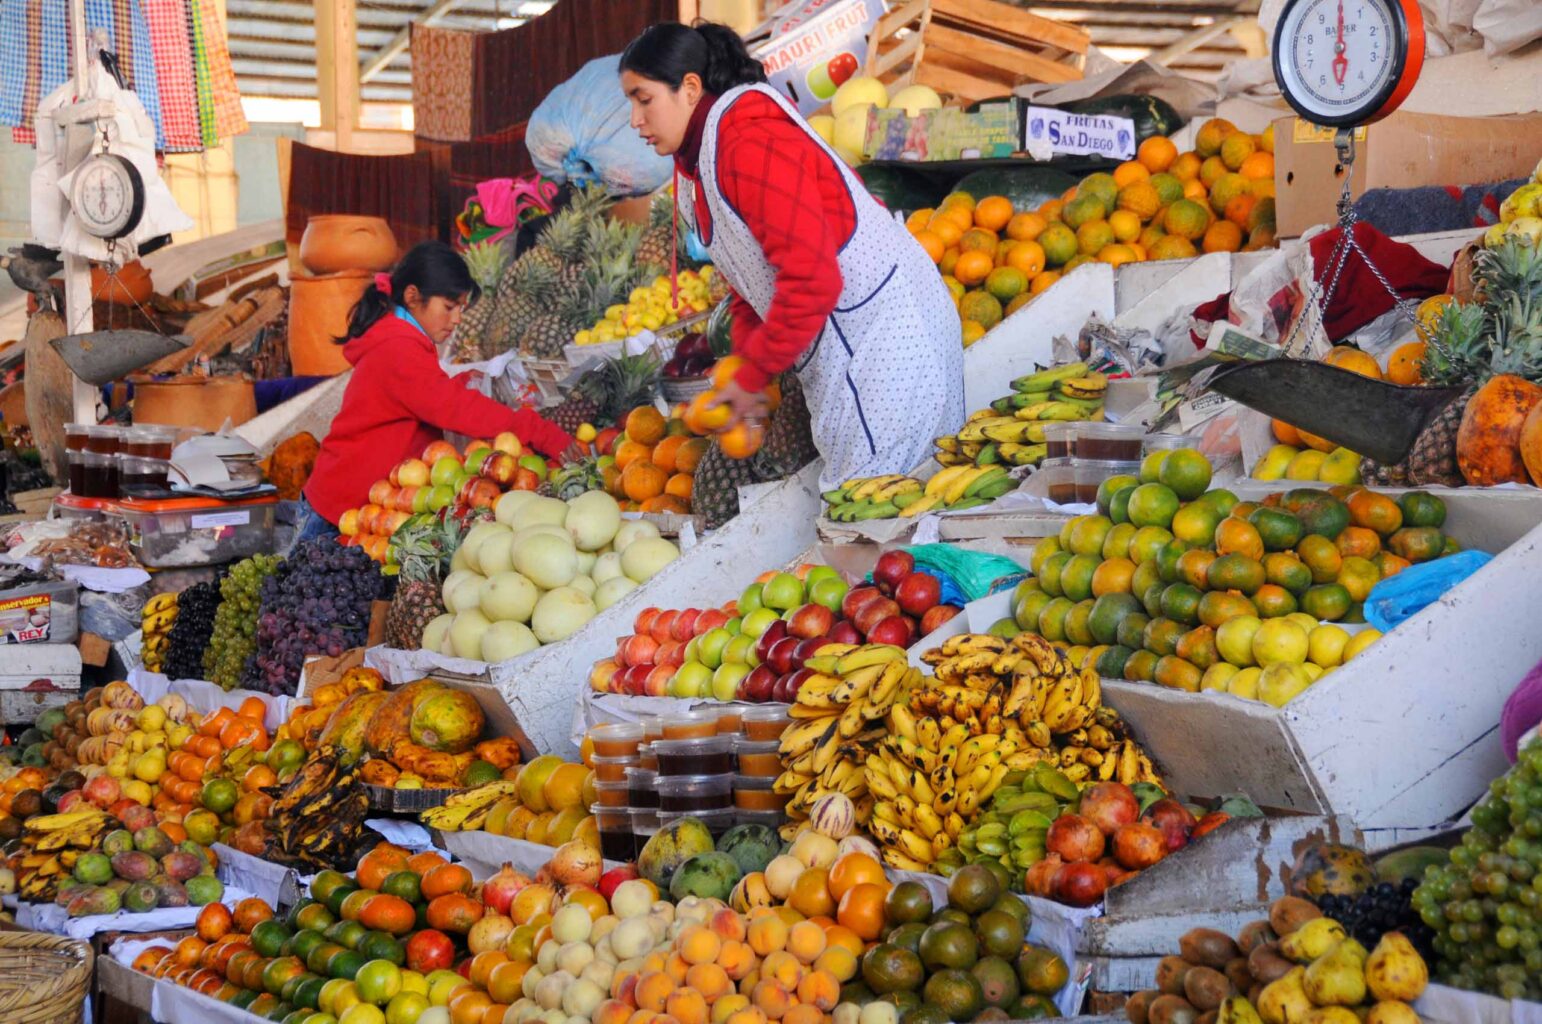 A fruit market stand in Peru.